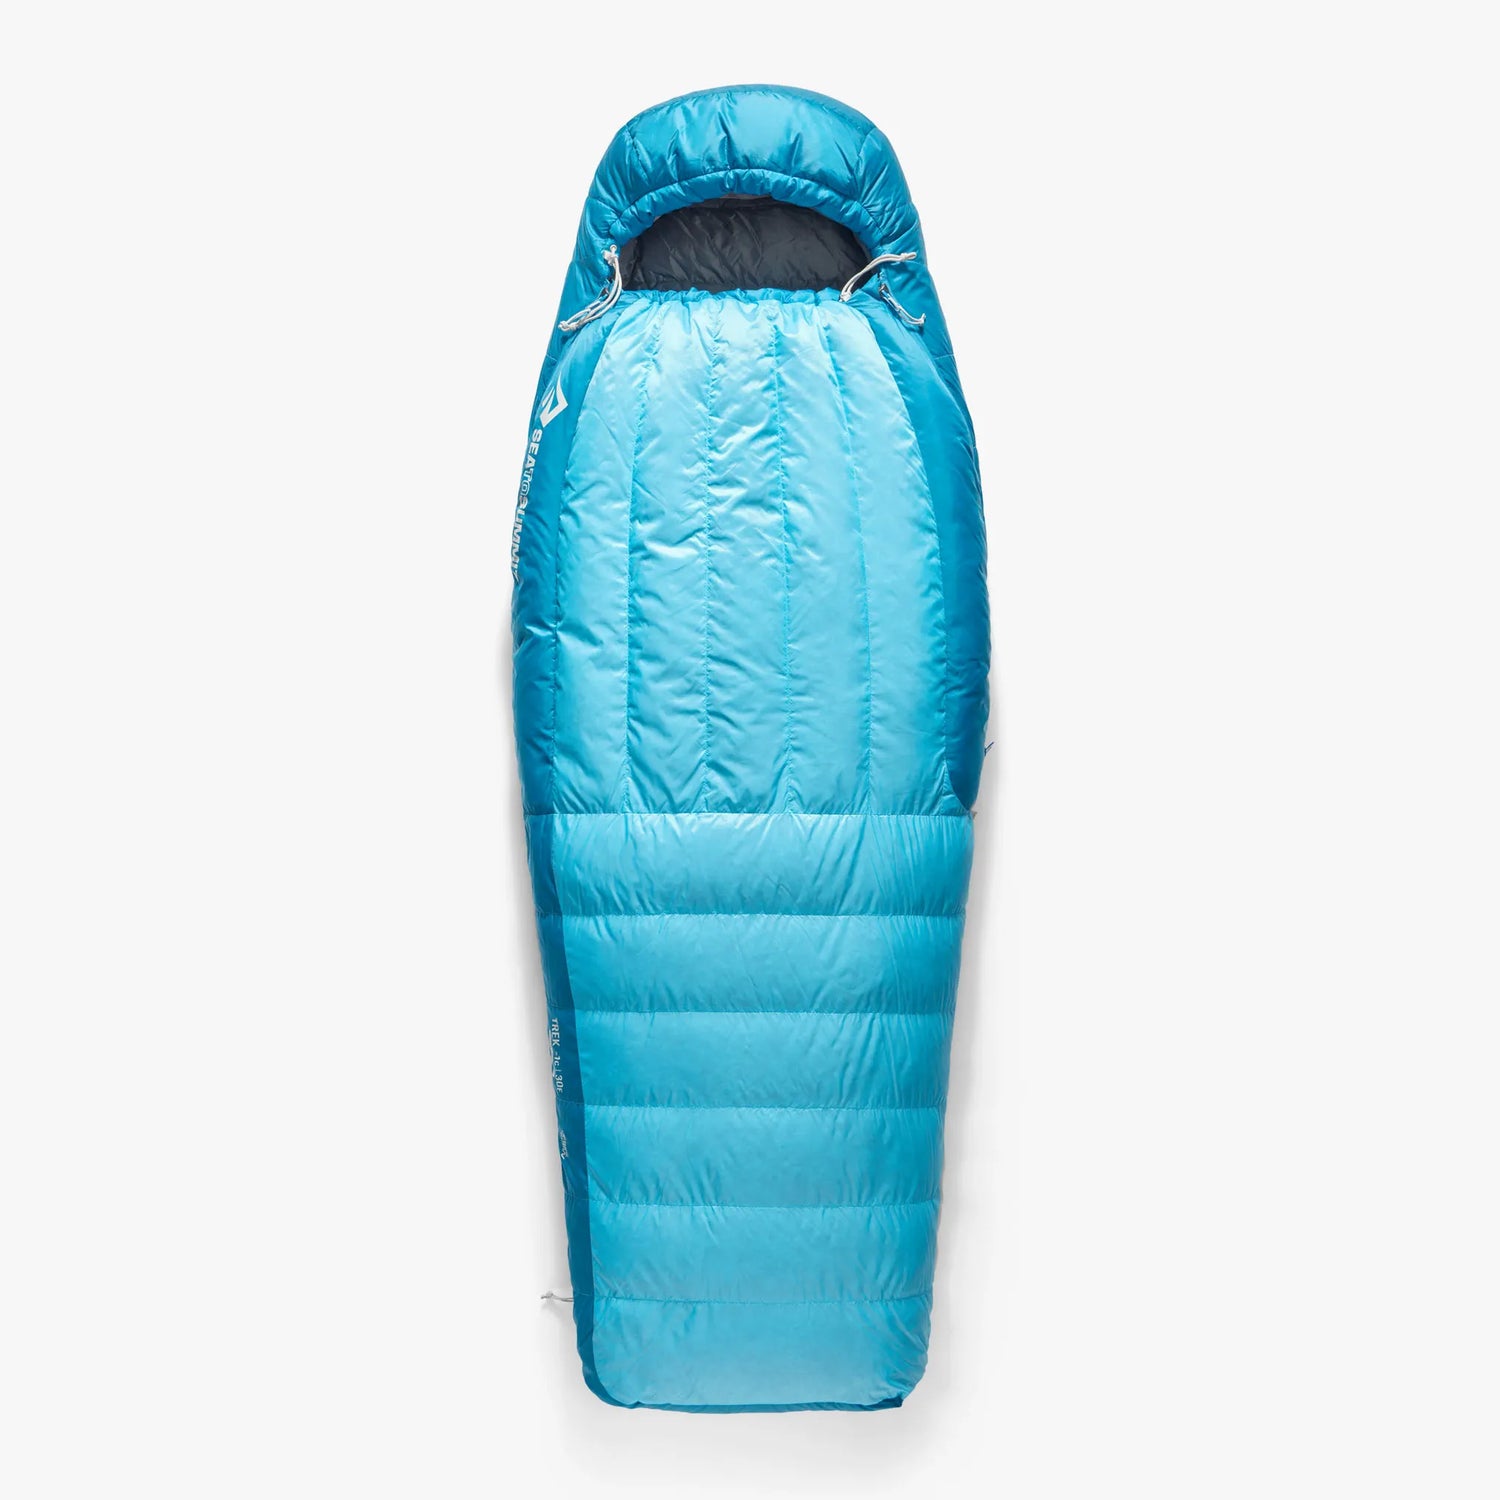 Trek Women's Down Sleeping Bag (-°C & -9°C)